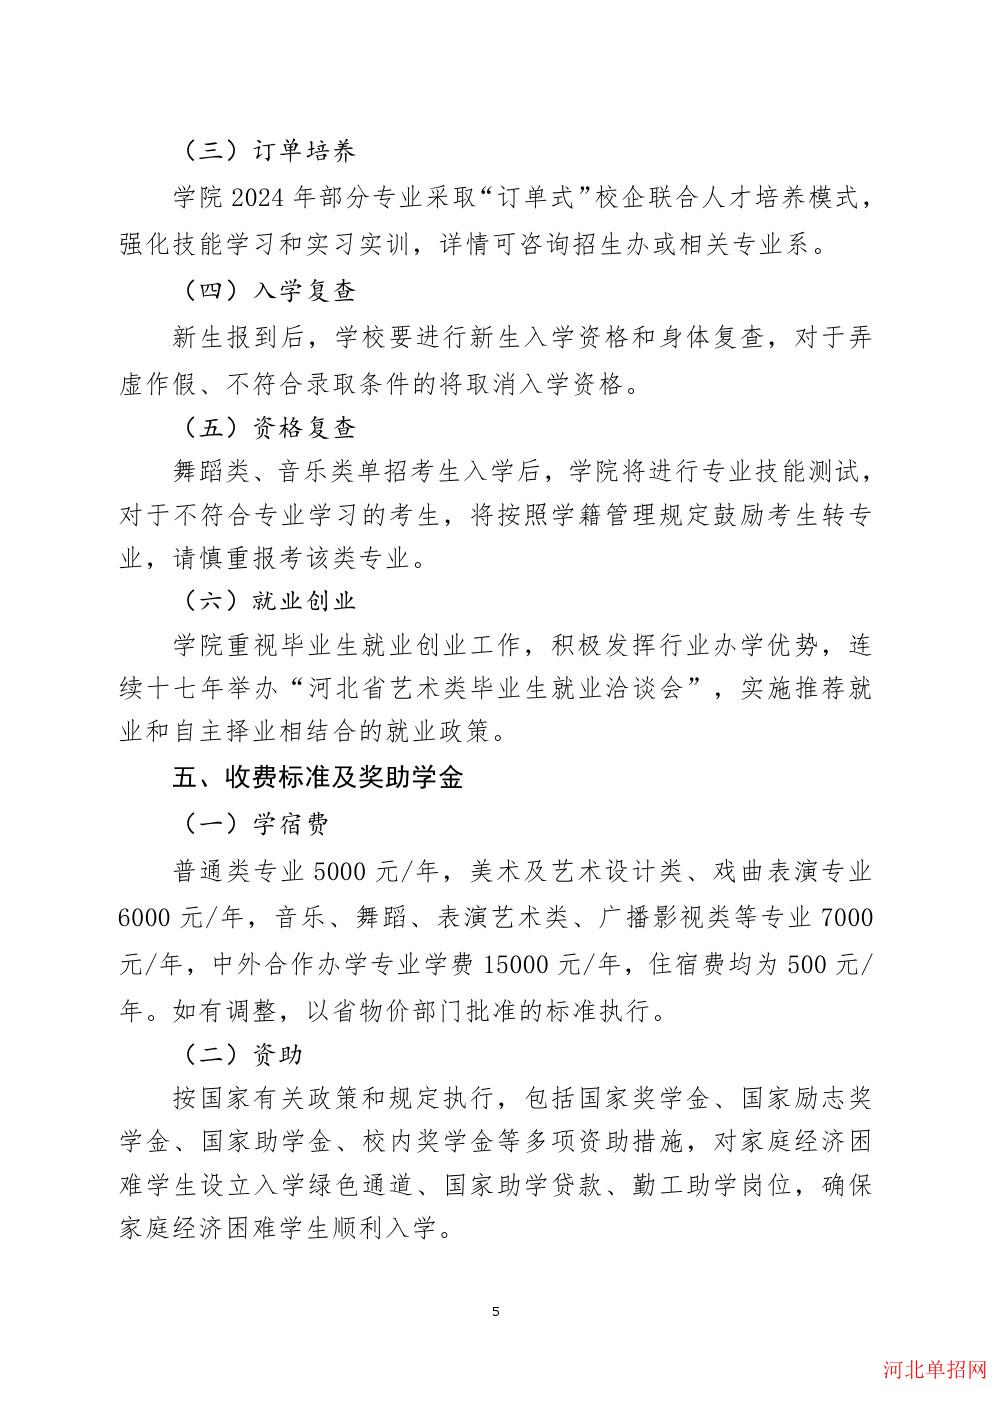 河北艺术职业学院2024年单招招生简章 图5